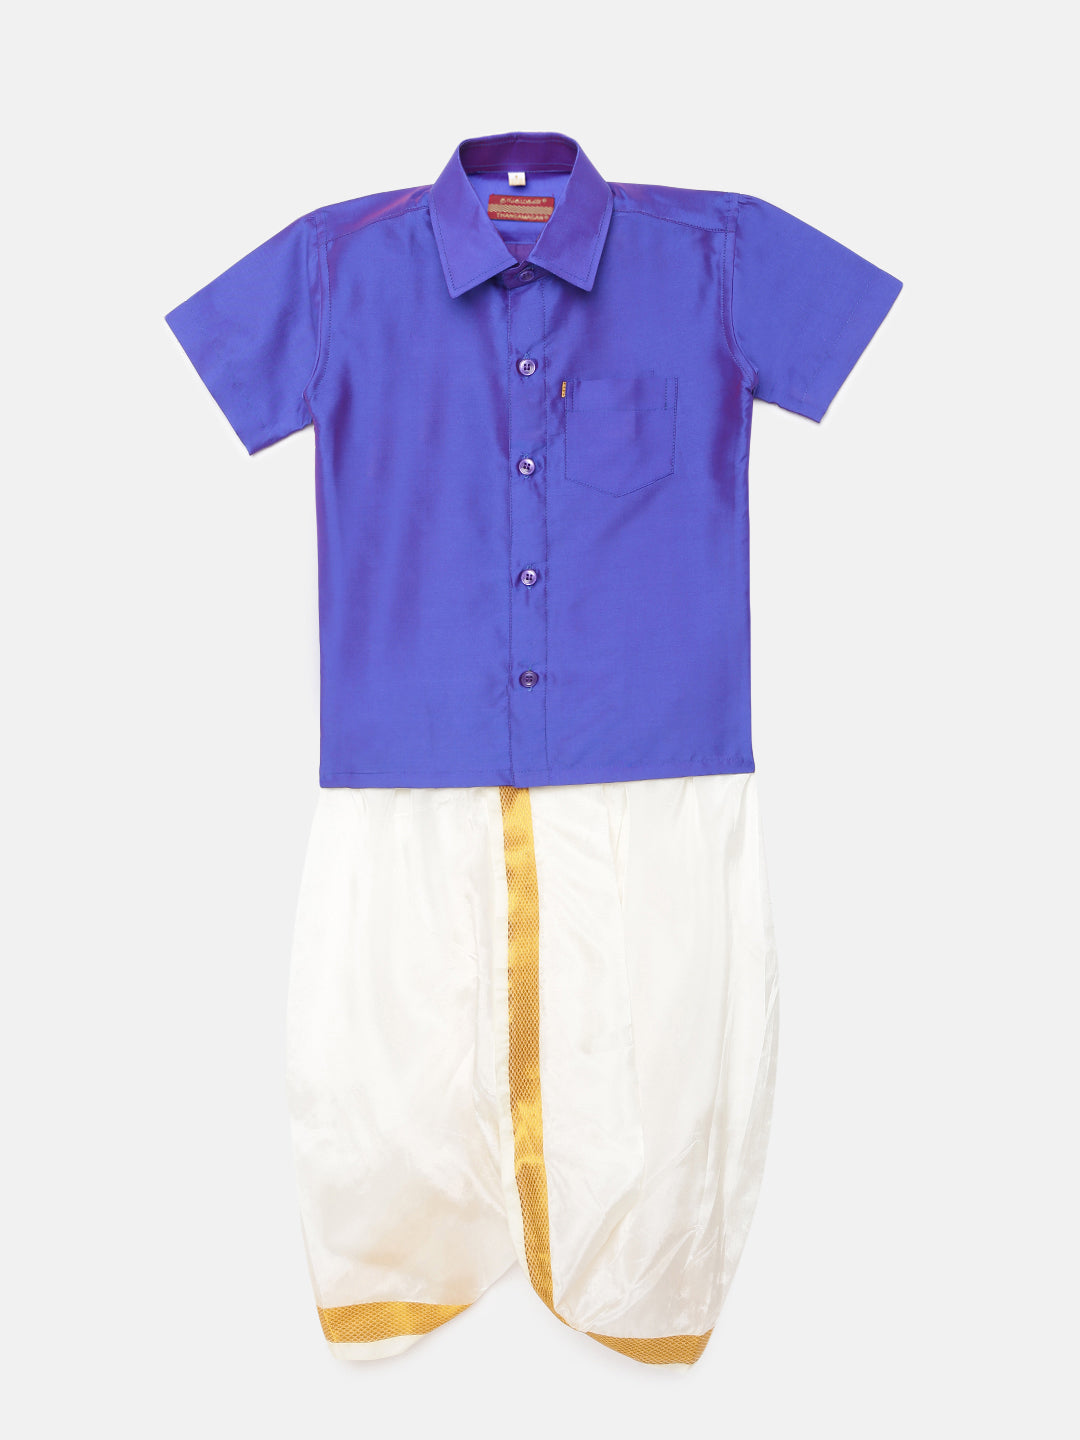 29. Boys Panjagajam & Shirt Set